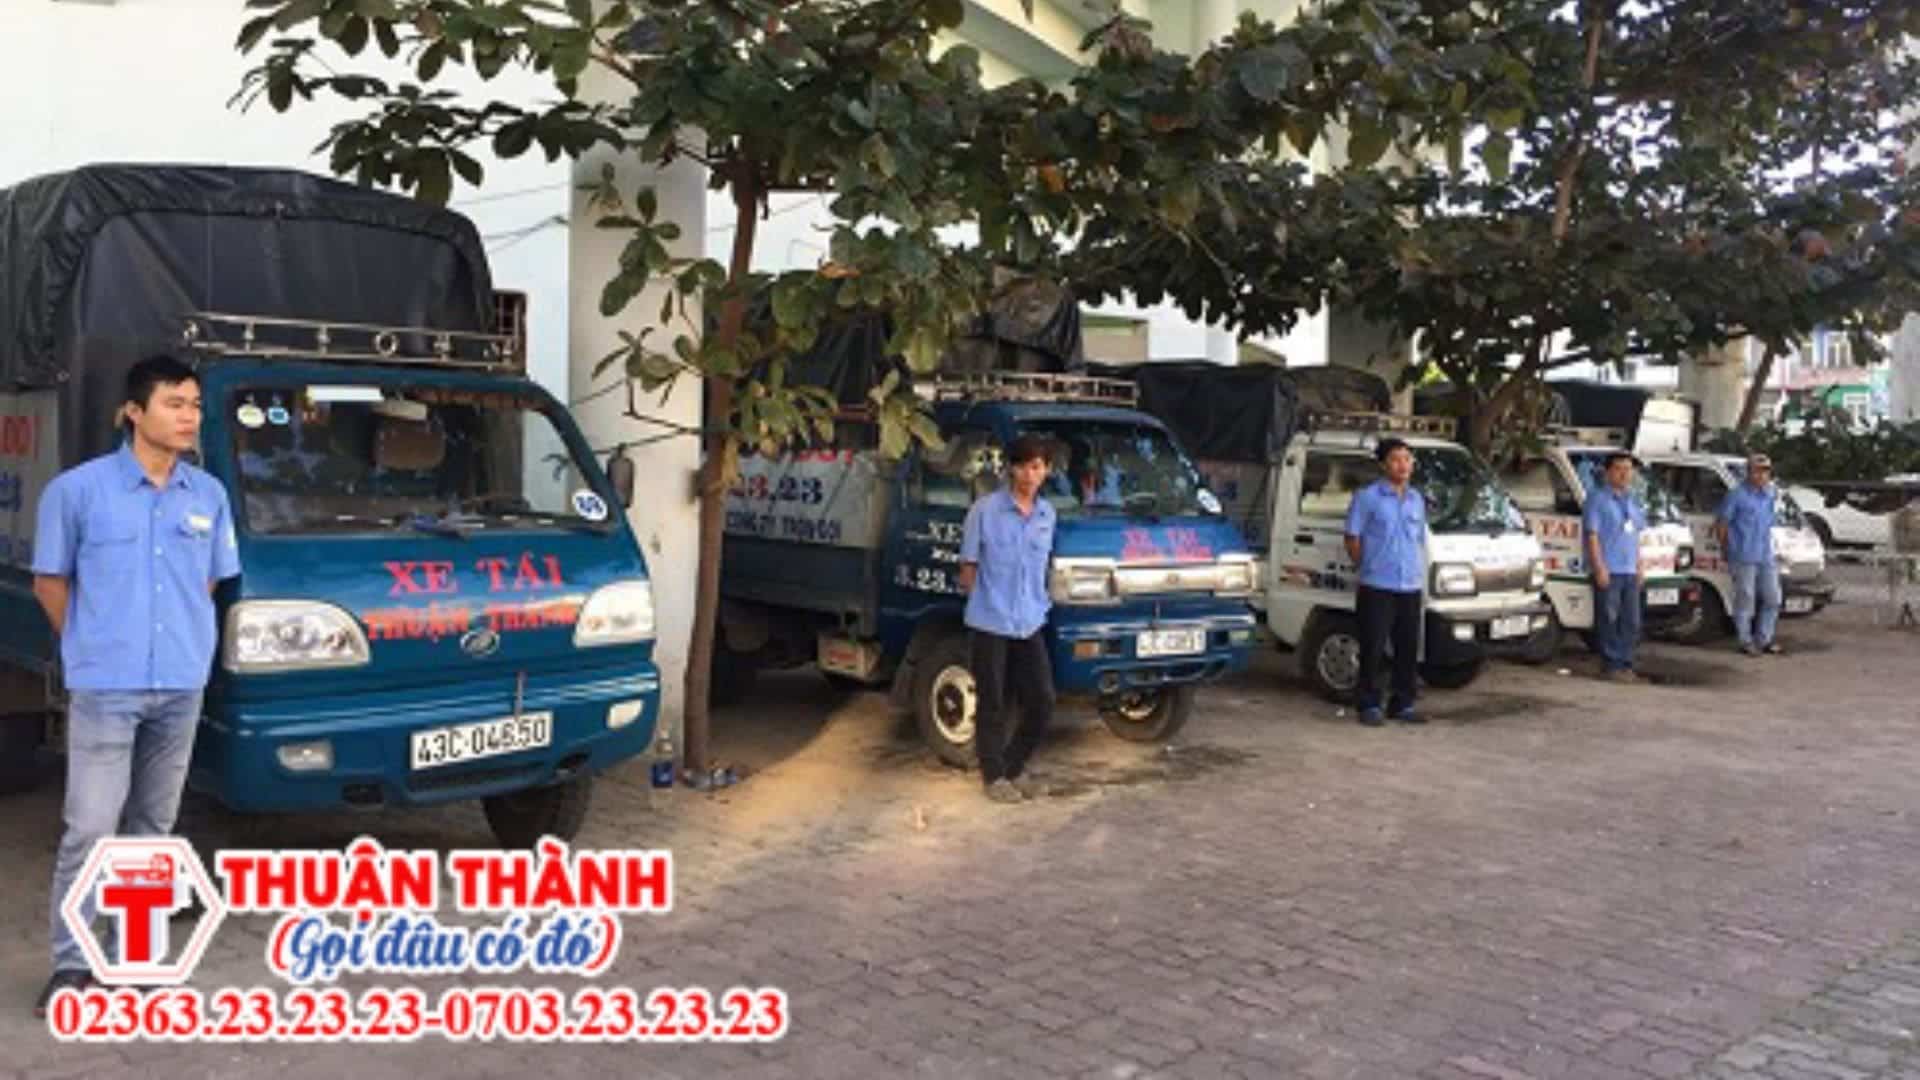 Xe tải Thuận Thành - Dịch vụ chuyển nhà Đà Nẵng giá rẻ